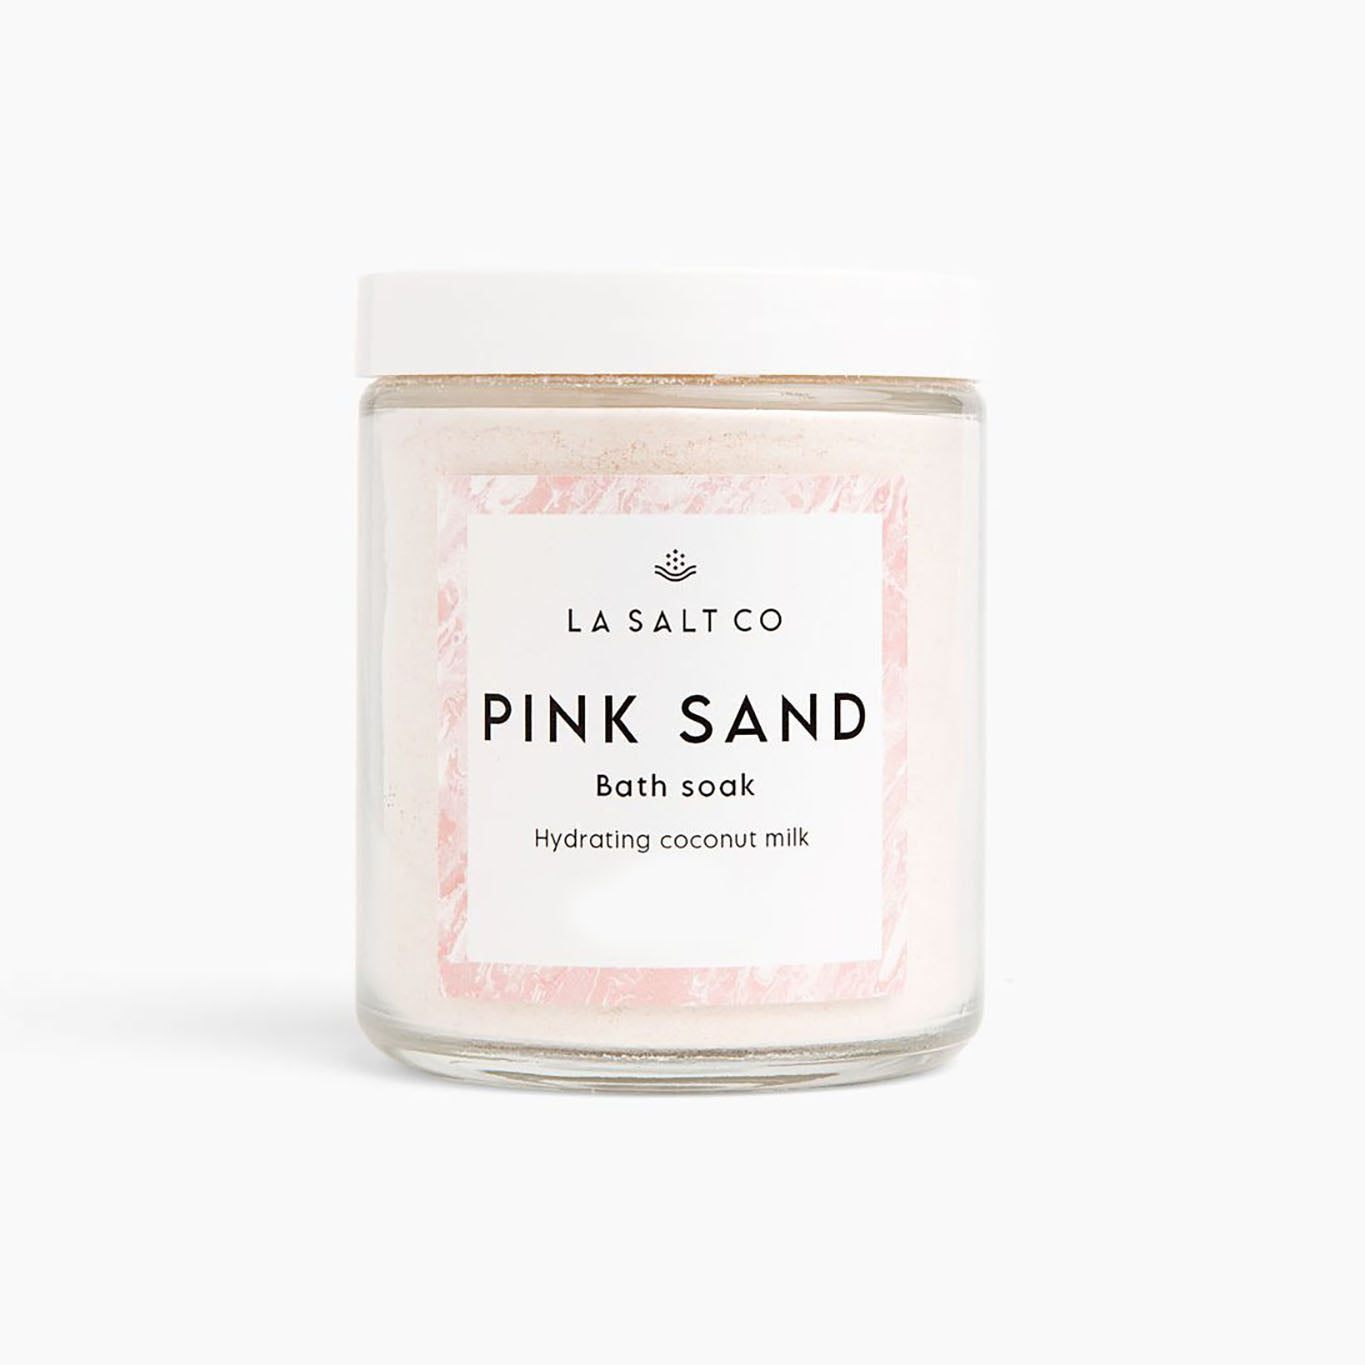 Pink Sand Coco Soak-Bath Soak-LA SALT CO-3.5oz-LA Salt Co.